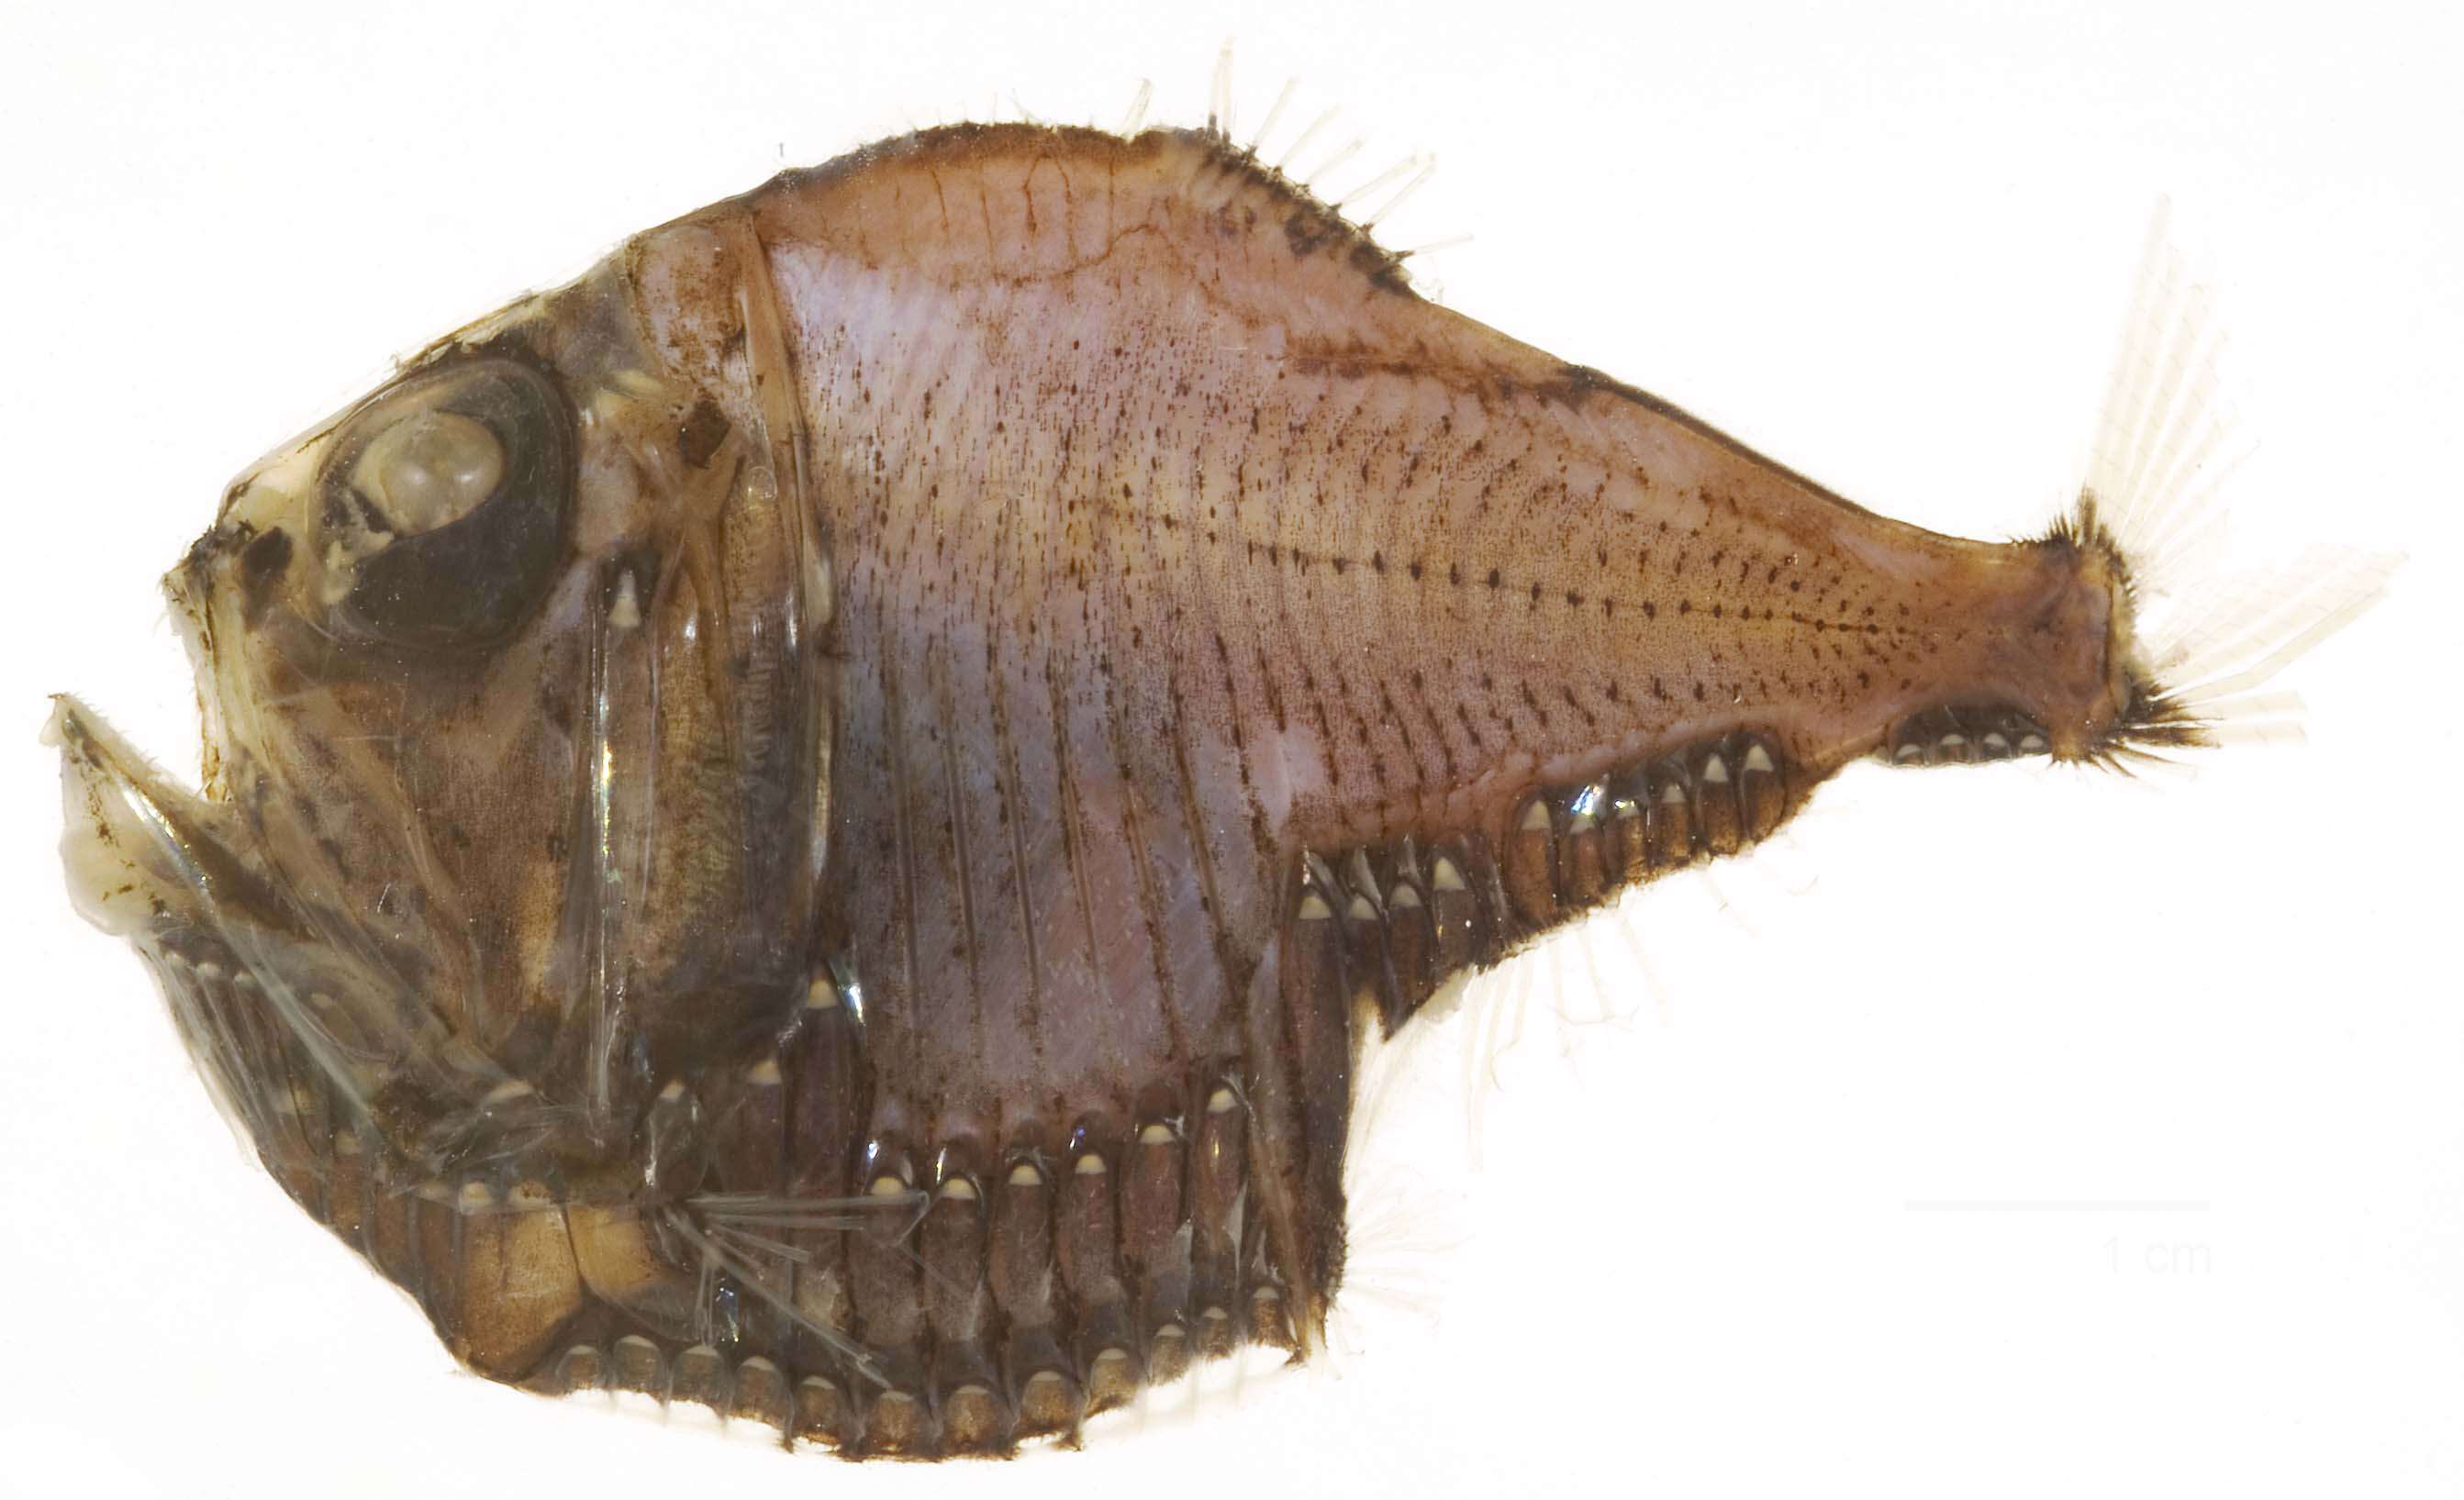 Image of marine hatchetfishes